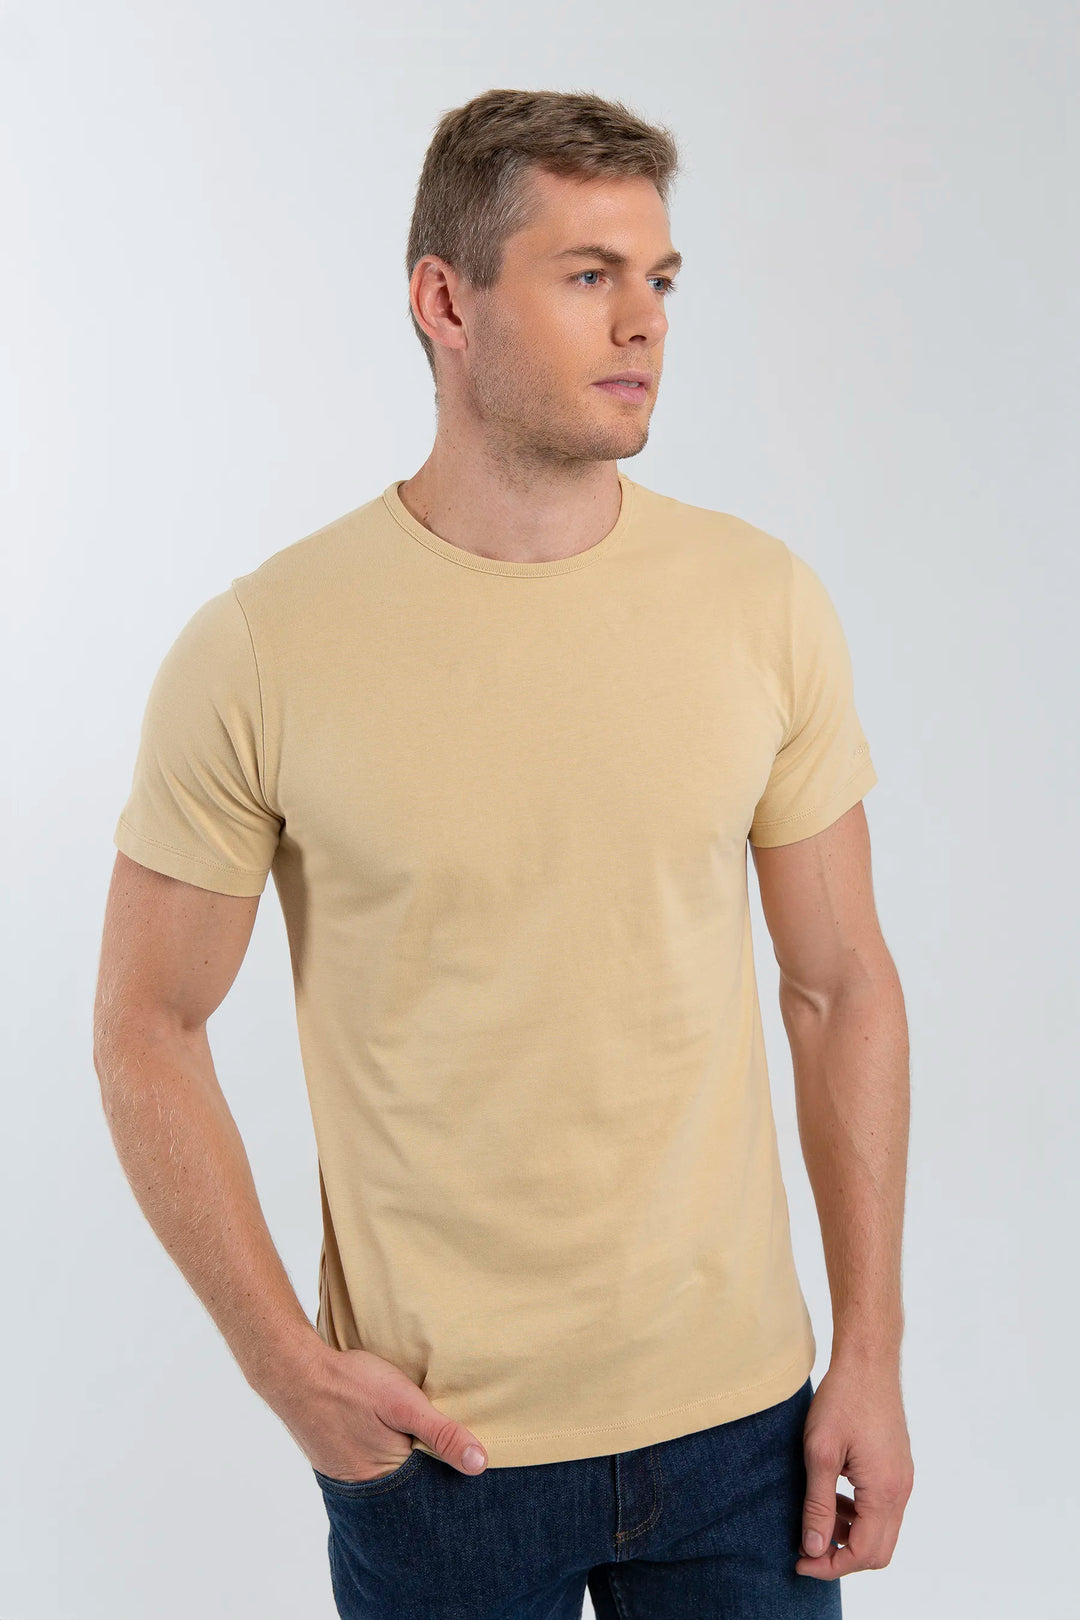 Camiseta para hombre color camel. Diseño minimalista, cómodo para cualquier ocasión.